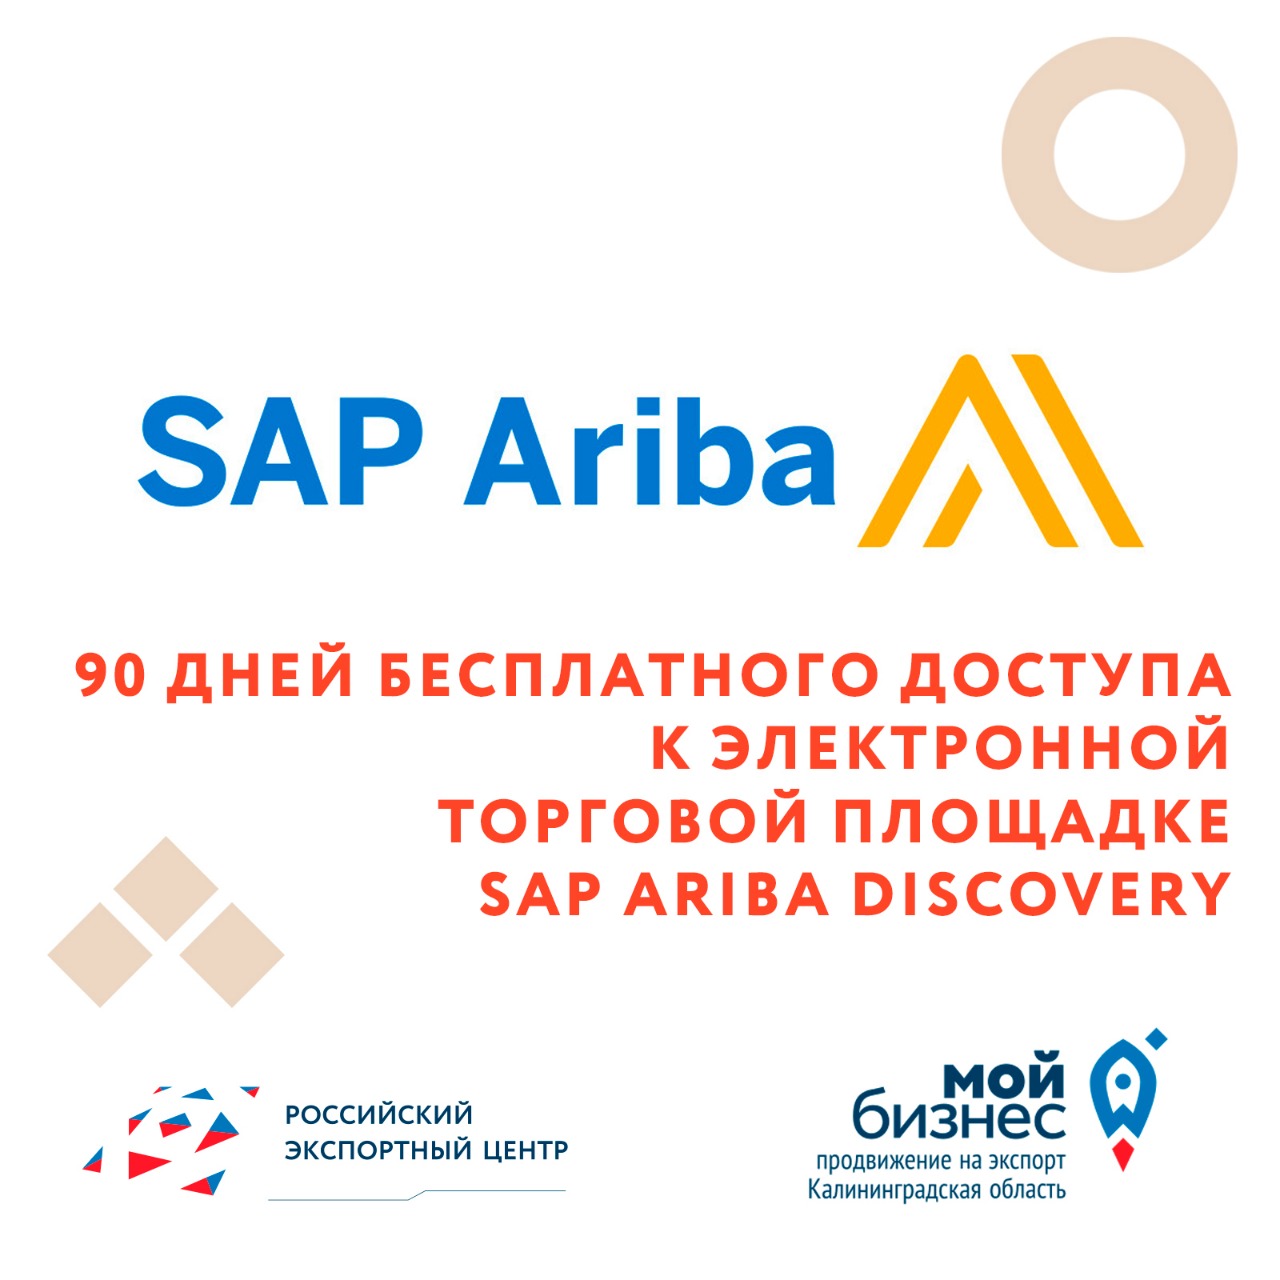 90 дней бесплатного доступа к электронной торговой площадке SAP Ariba Discovery